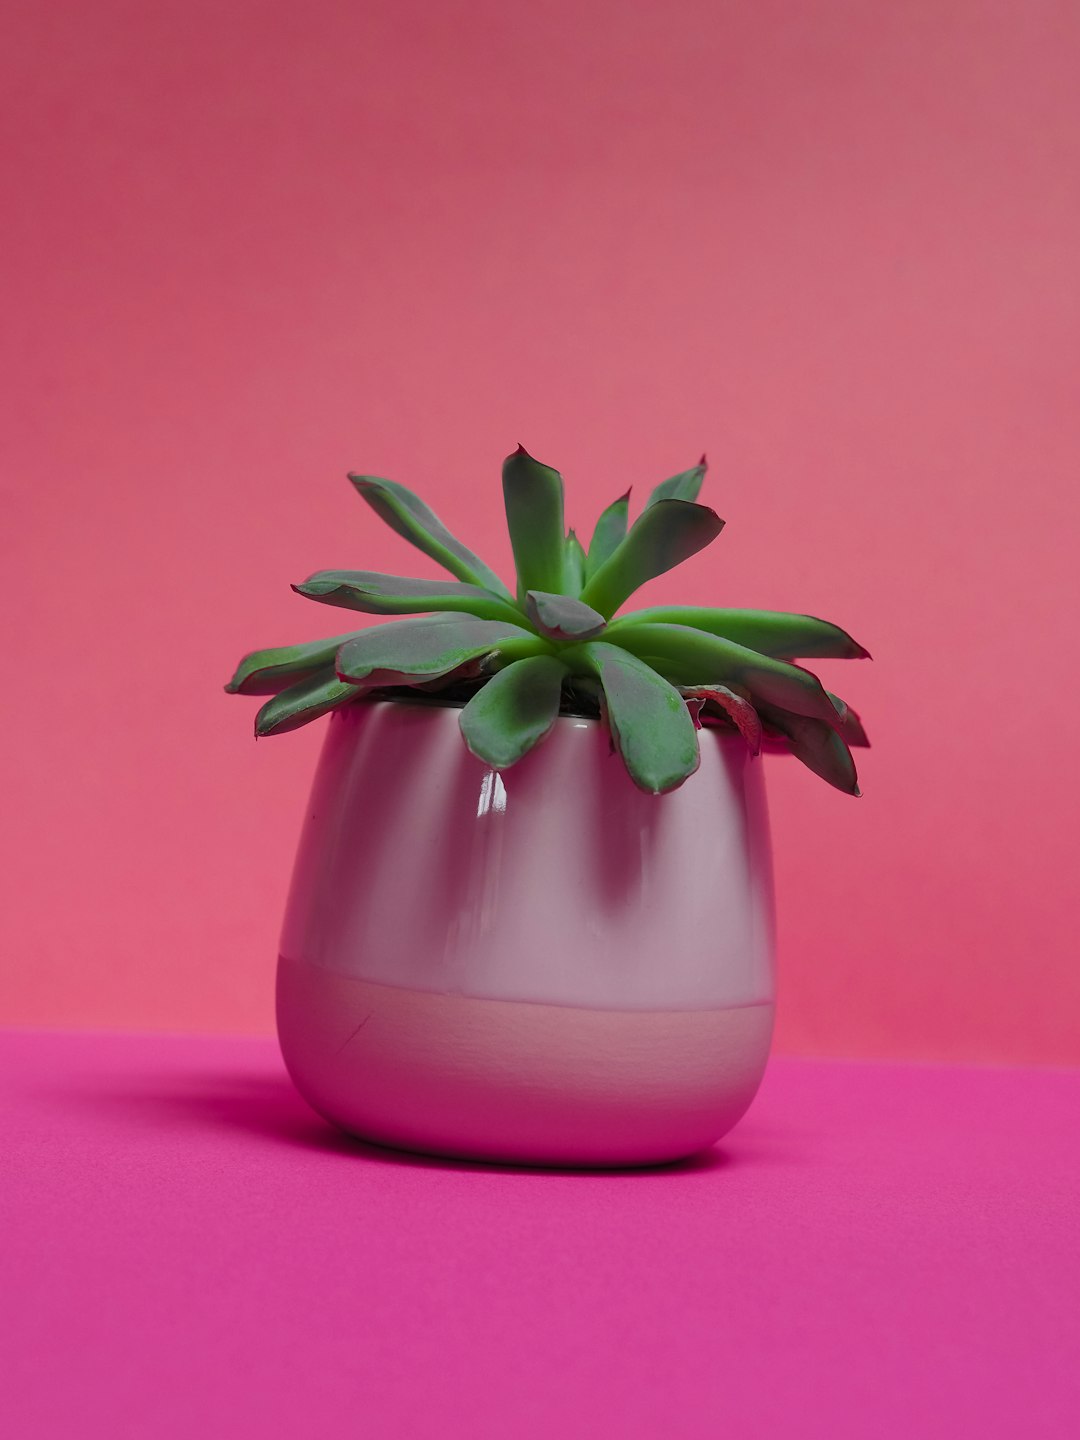 green plant in gray vase